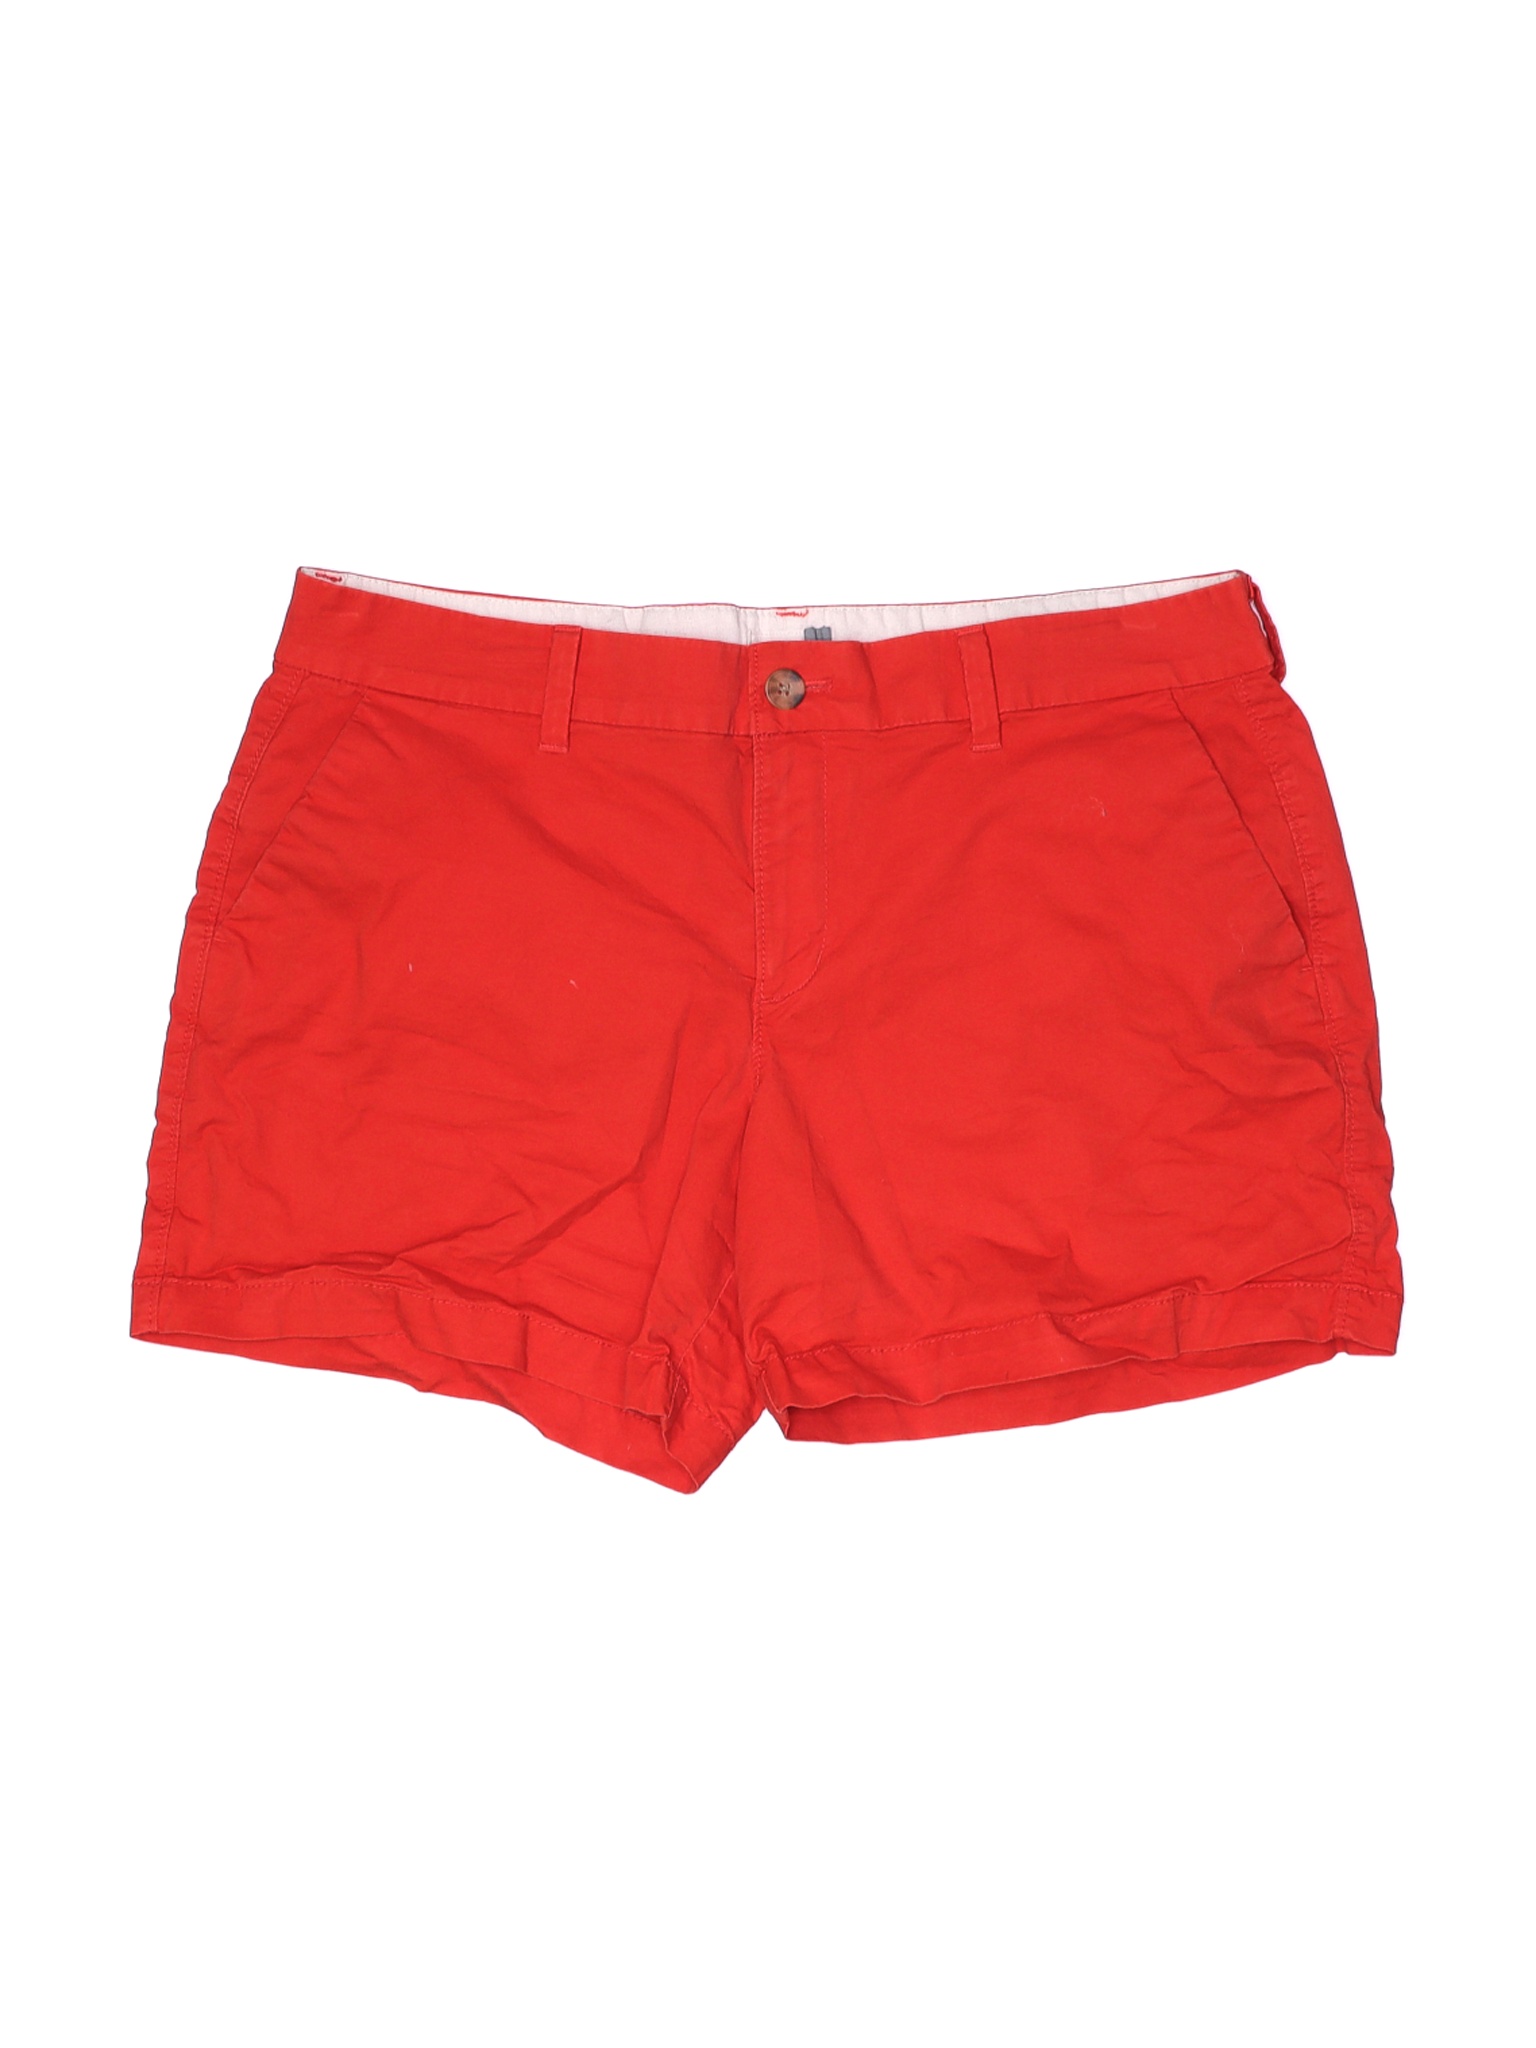 Old Navy Women Red Khaki Shorts 10 | eBay